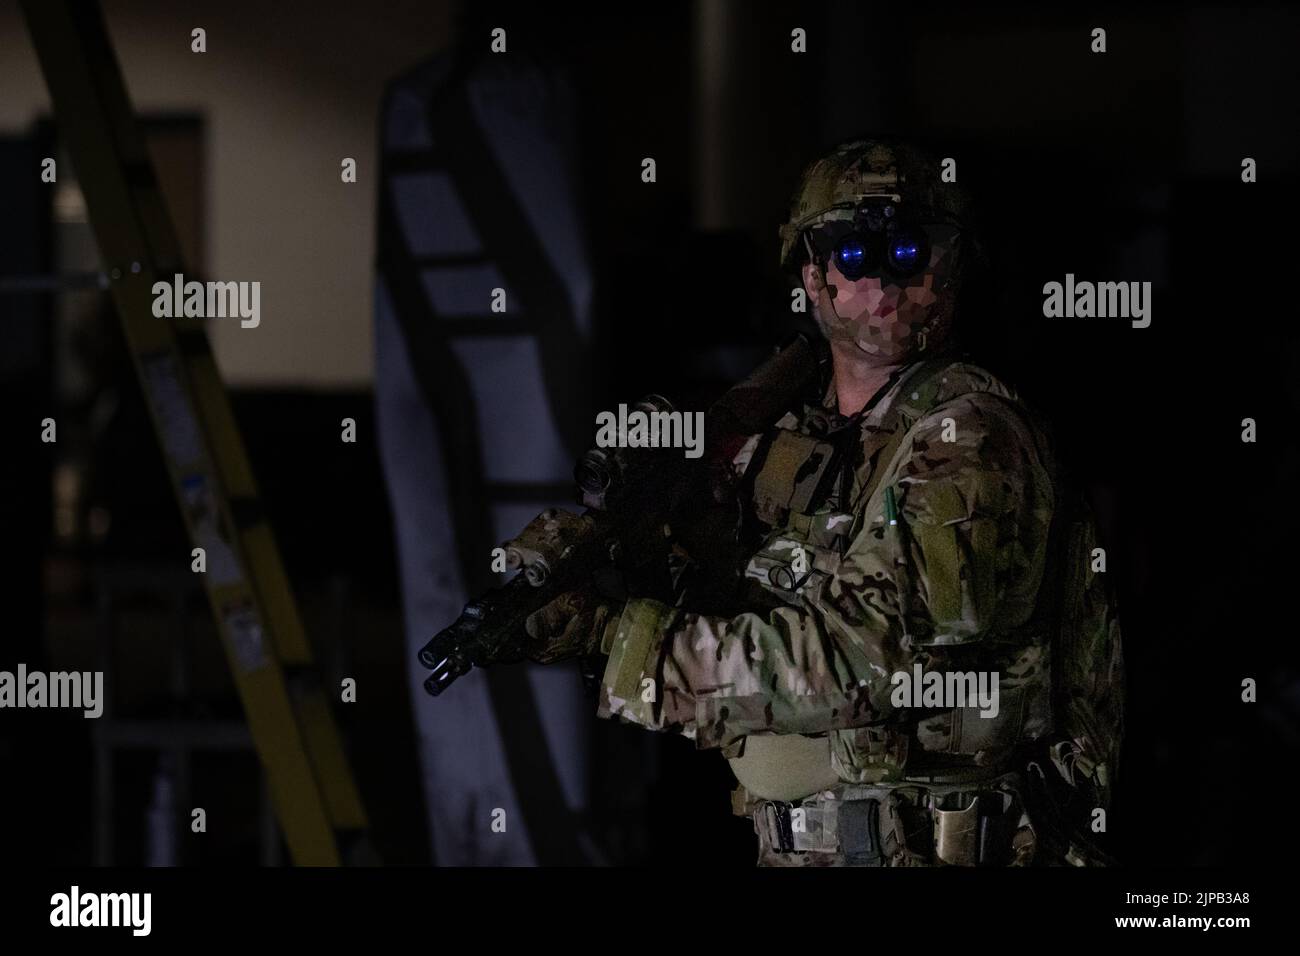 Tres empresas suministrarán equipos de visión nocturna al Ejército